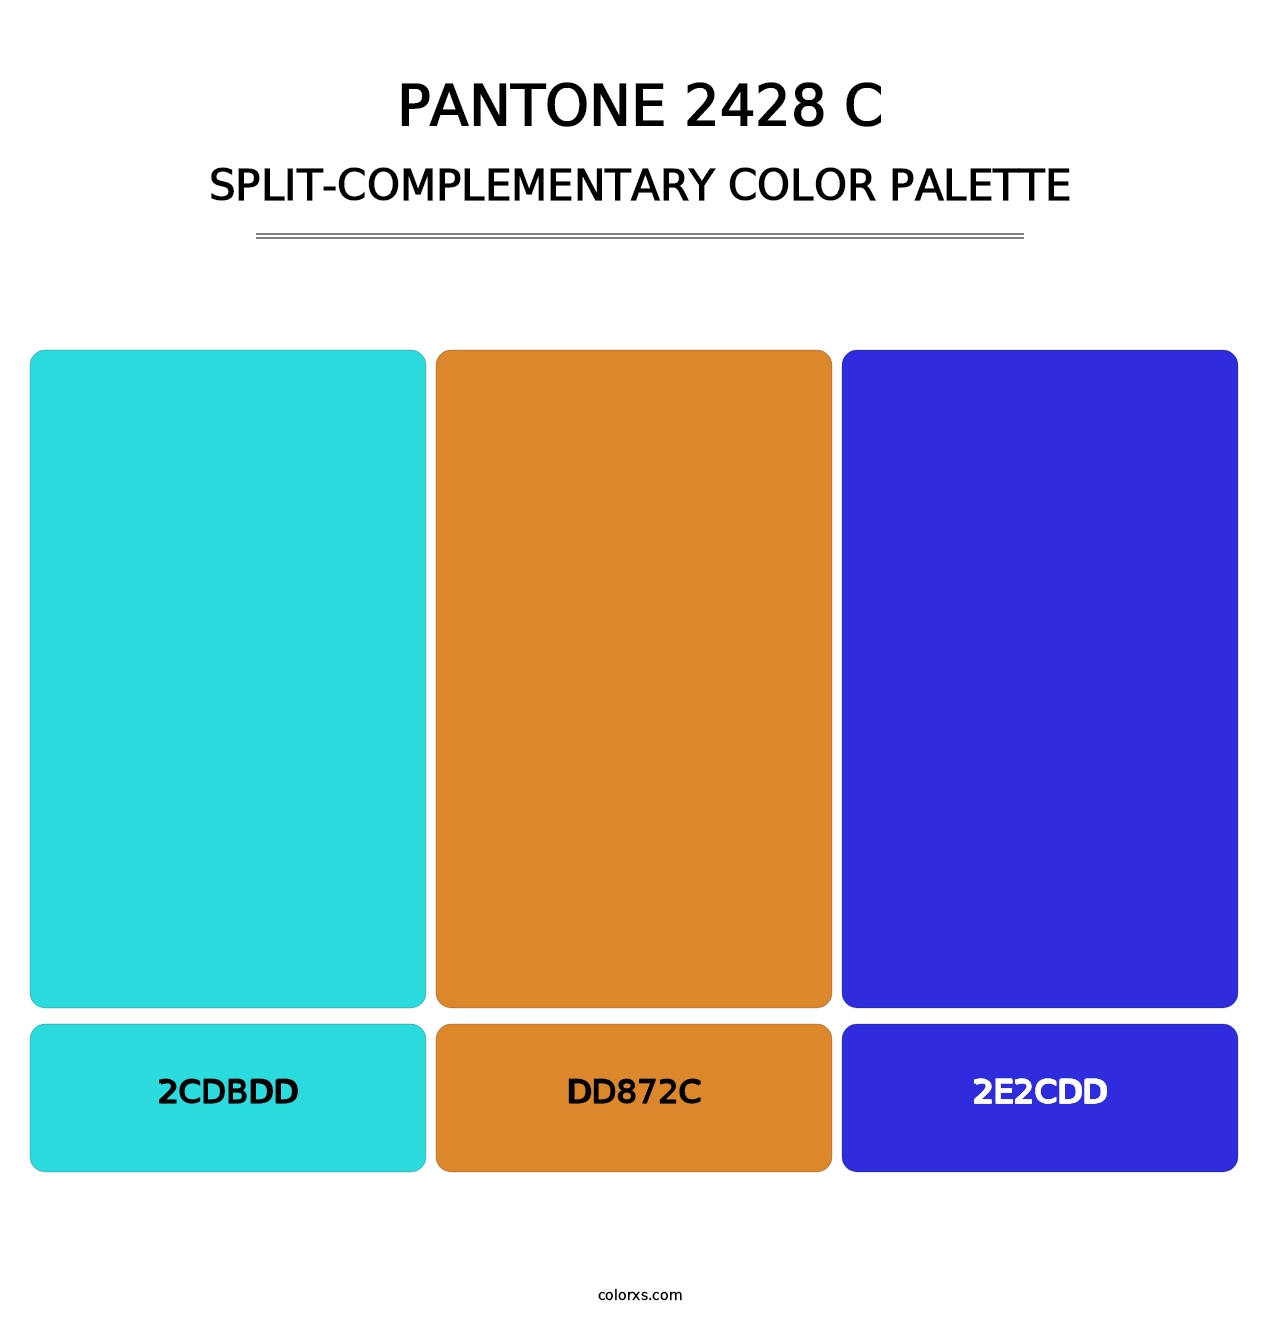 PANTONE 2428 C - Split-Complementary Color Palette